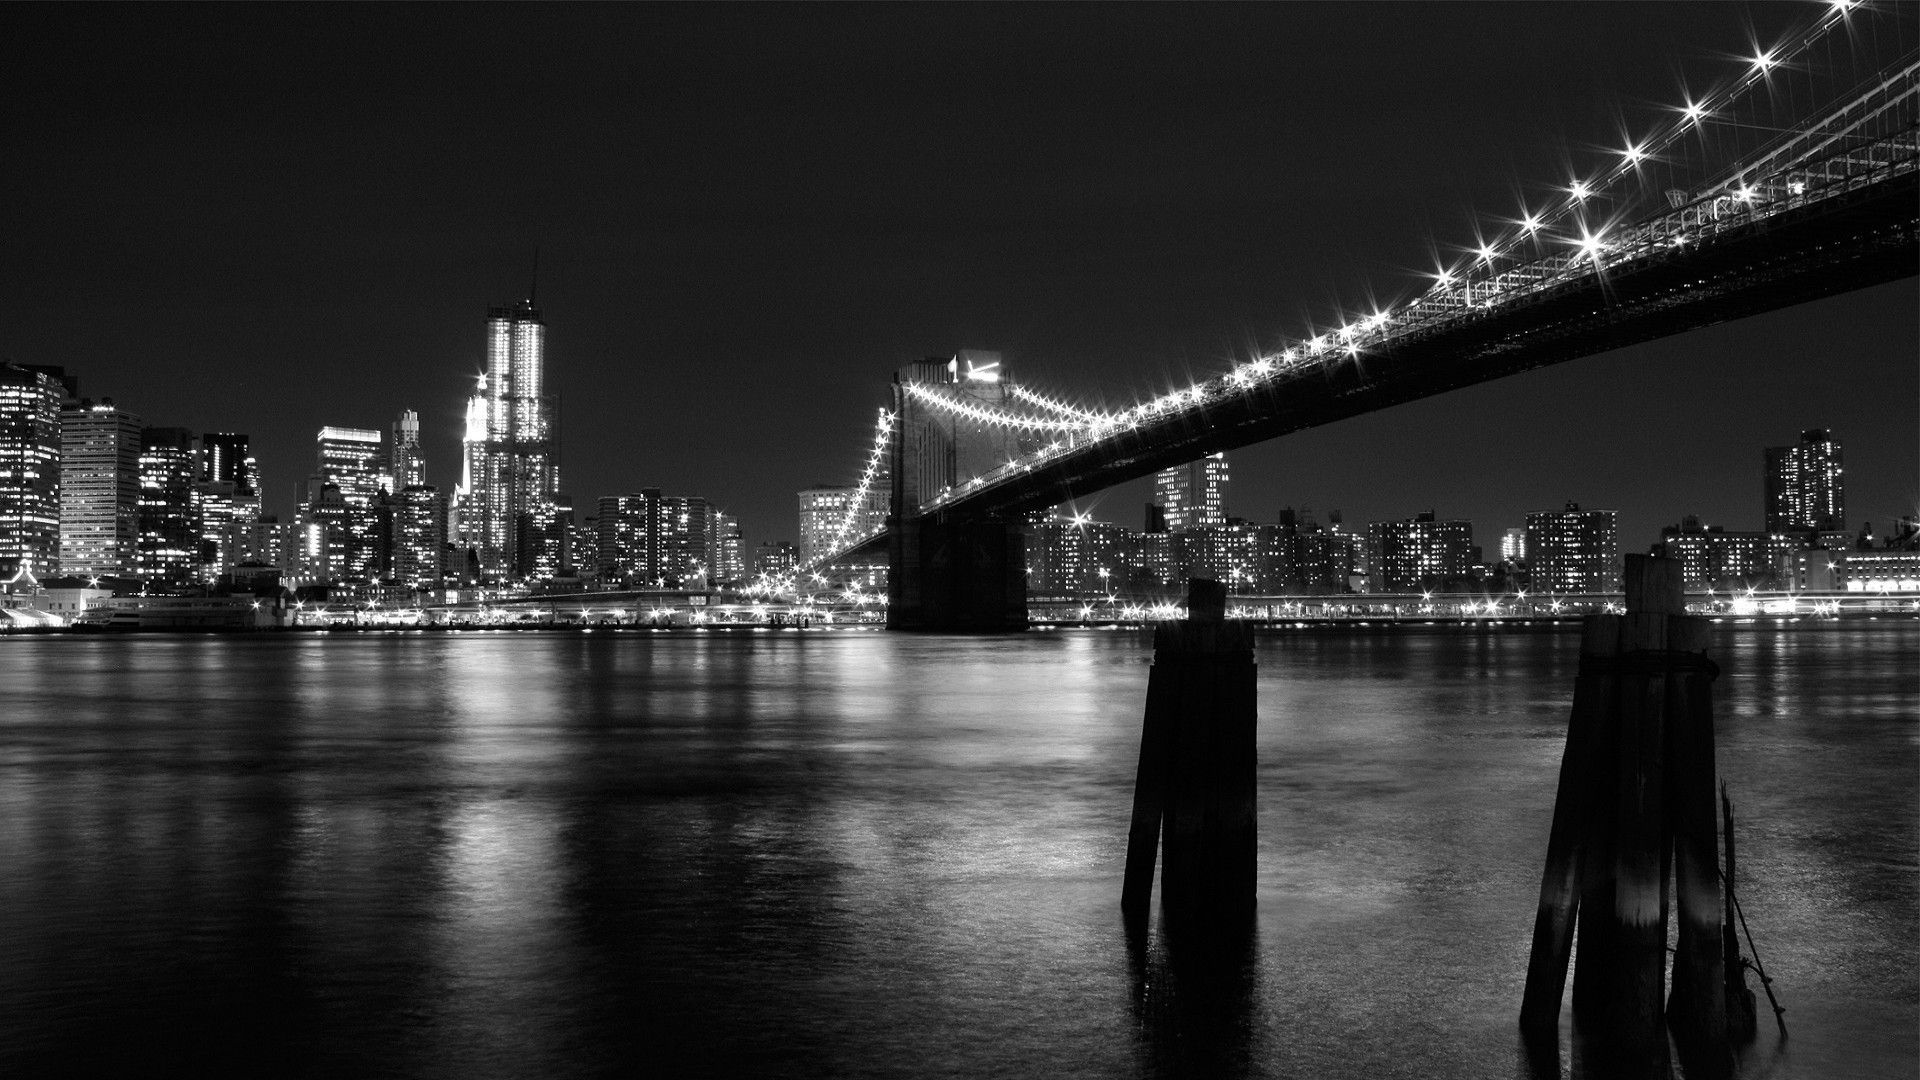 عکس هنری پل مشهور بروکلین در شب برای پست اینستاگرام